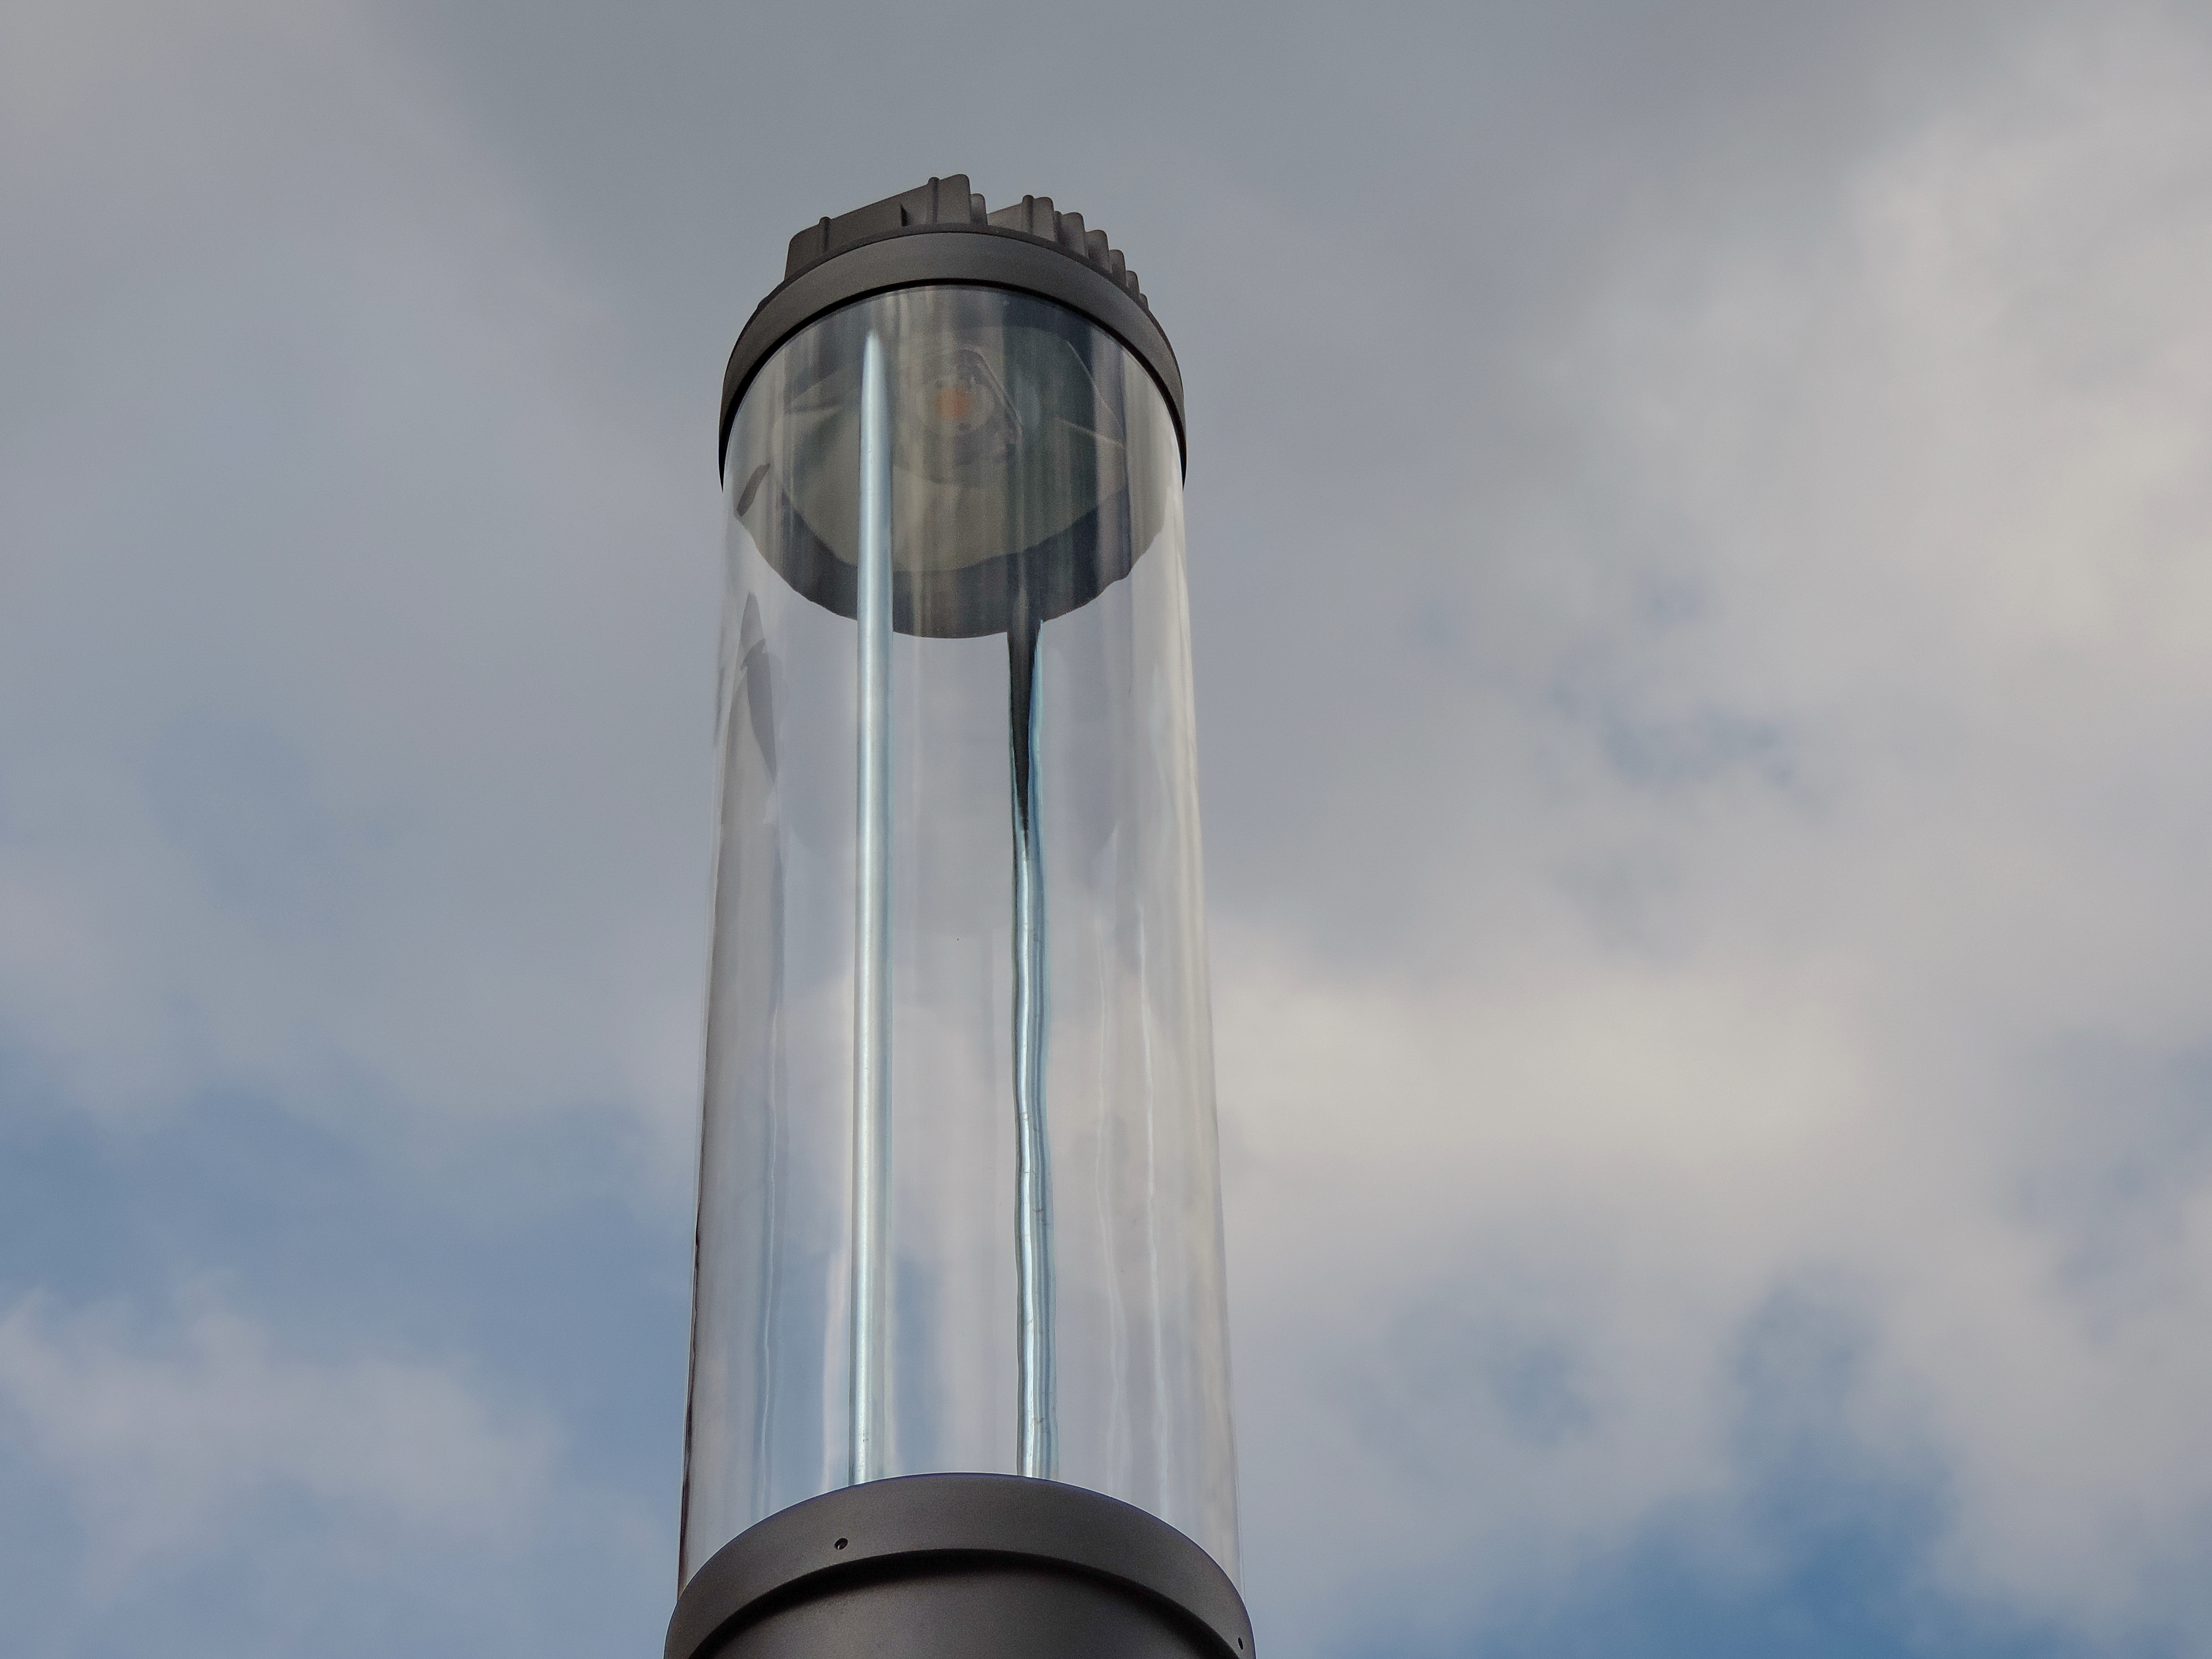 По краю стекла воздух. Воздушный стеклянный колокол. Фильтр воздушный стеклянный. Фонарь верхнего света в архитектуре виды.